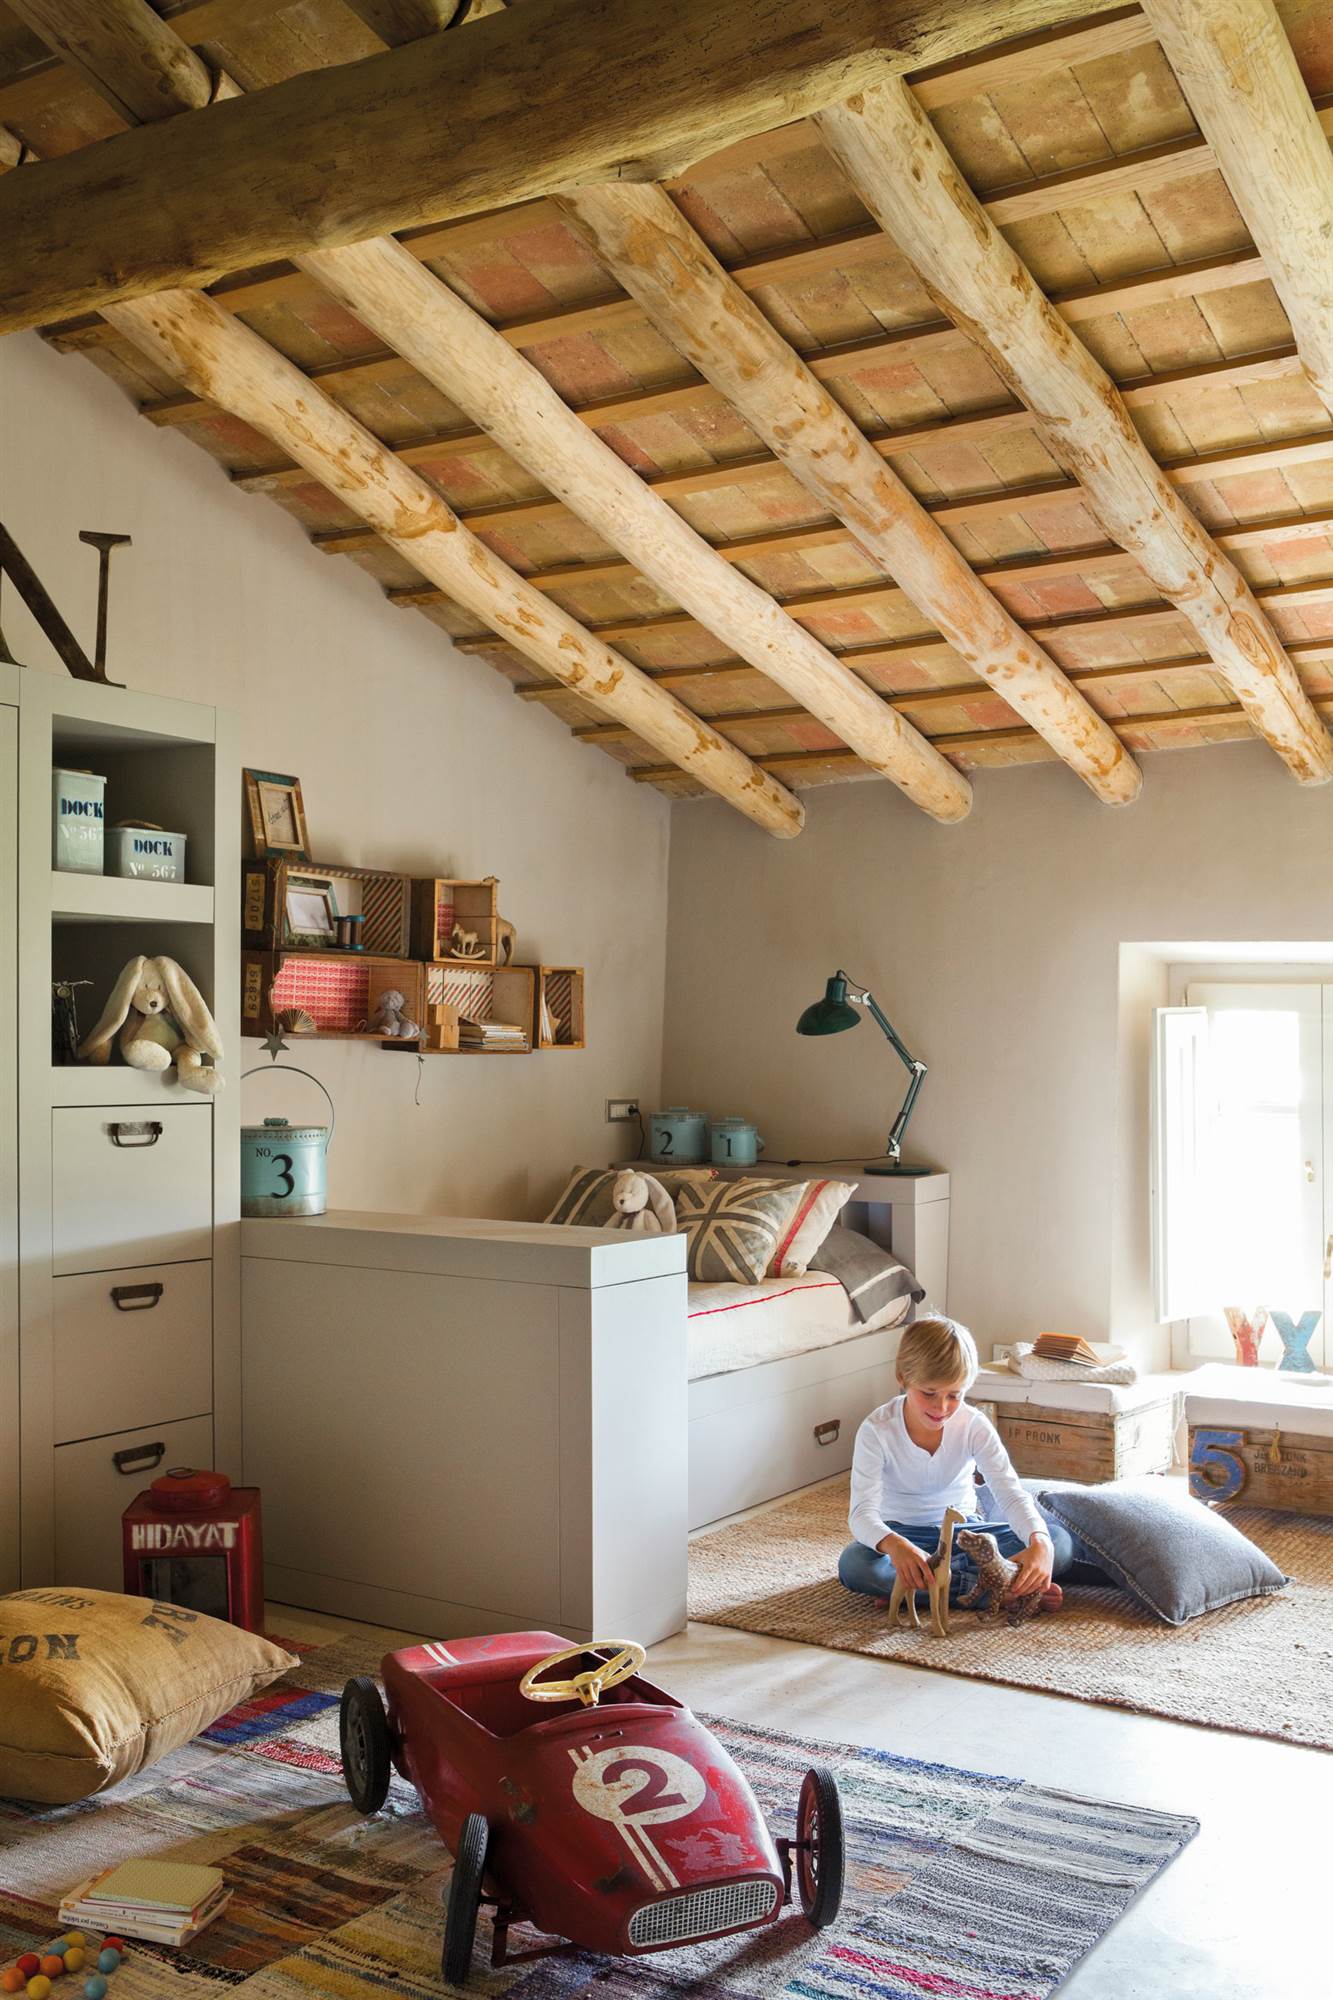 Dormitorio infantil abuhardillado con vigas de madera, alfombras, murete gris y coche de juguete.